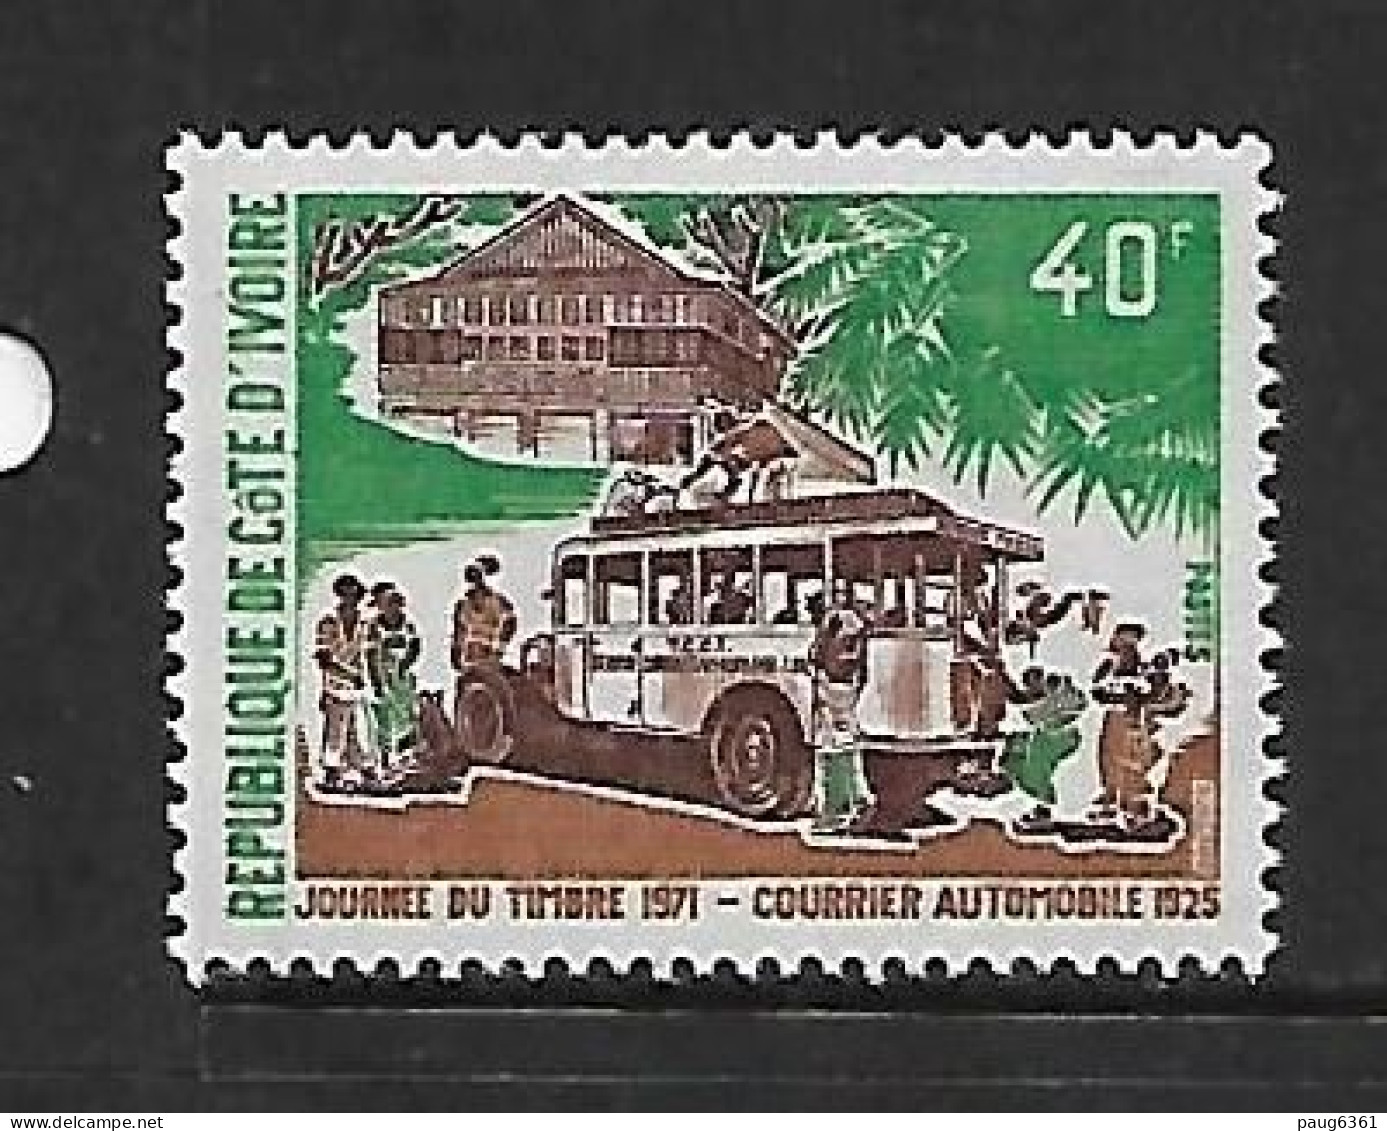 COTE D'IVOIRE 1971  JOURNEE DU TIMBRE-COURRIER AUTOMOBILE  YVERT N°311   NEUF MNH** - Bussen